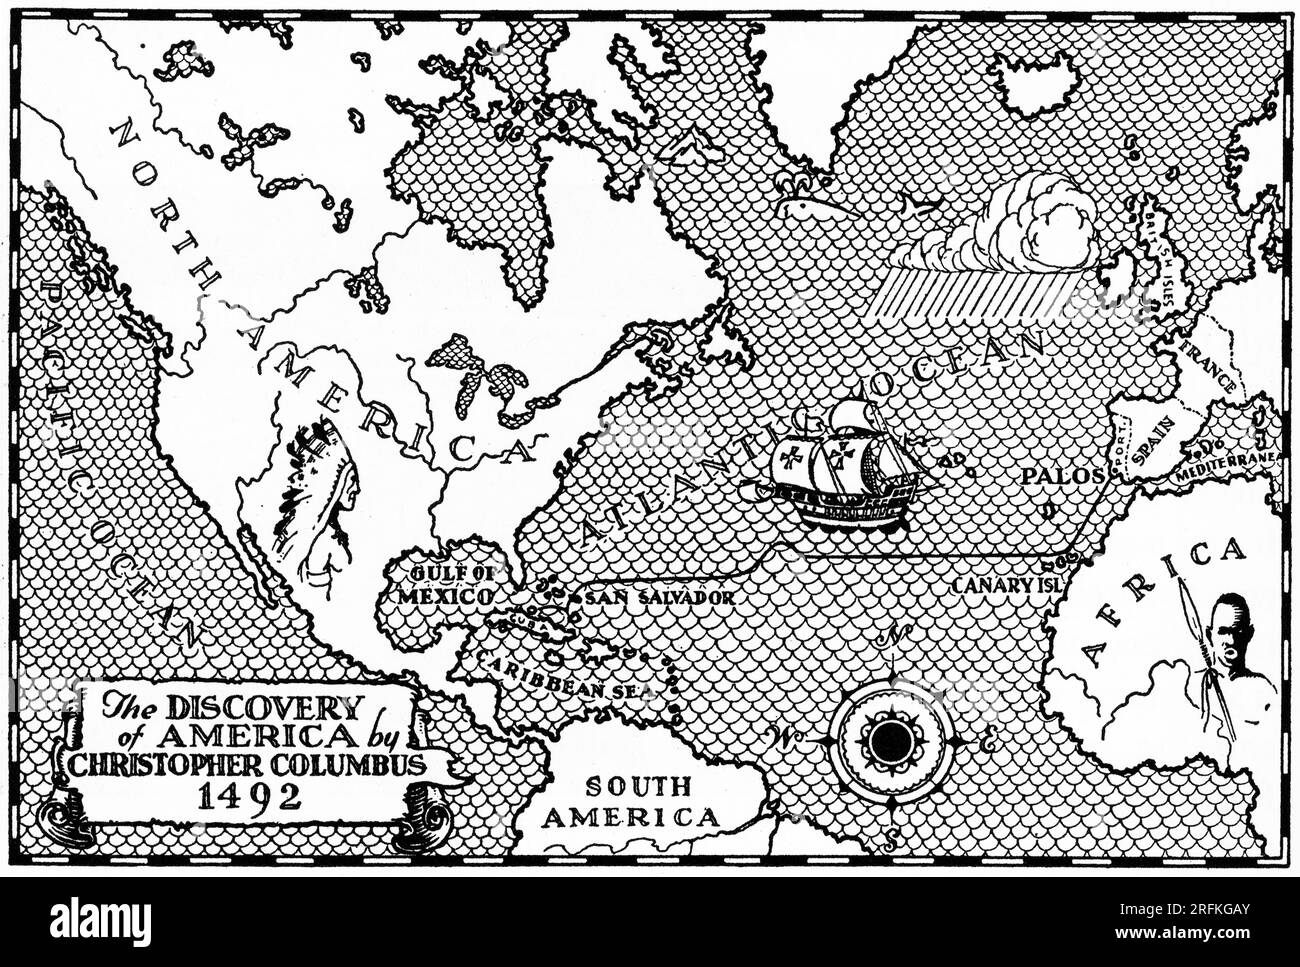 Die Entdeckung Amerikas von Christoph Kolumbus, 1492. Eine Karte von Christoph Kolumbus' Reise nach Amerika. Stockfoto